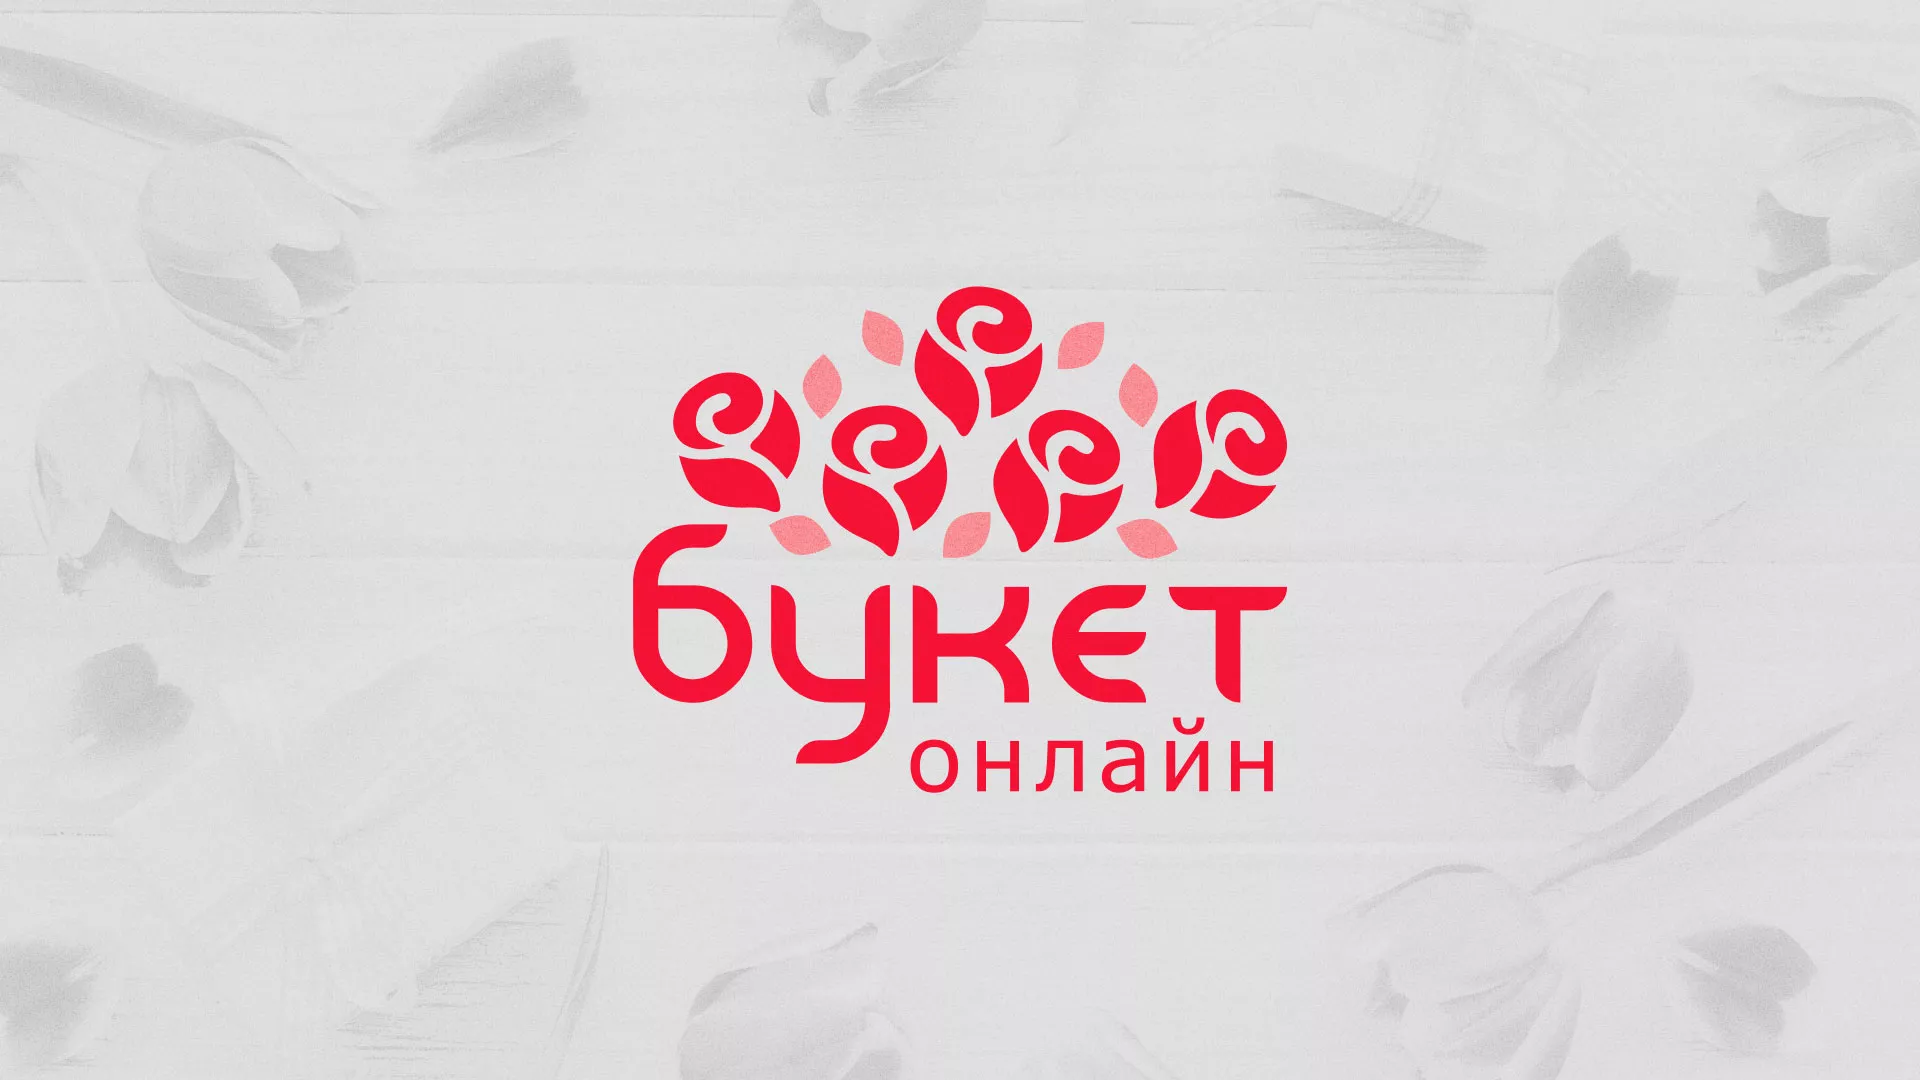 Создание интернет-магазина «Букет-онлайн» по цветам в Омутнинске